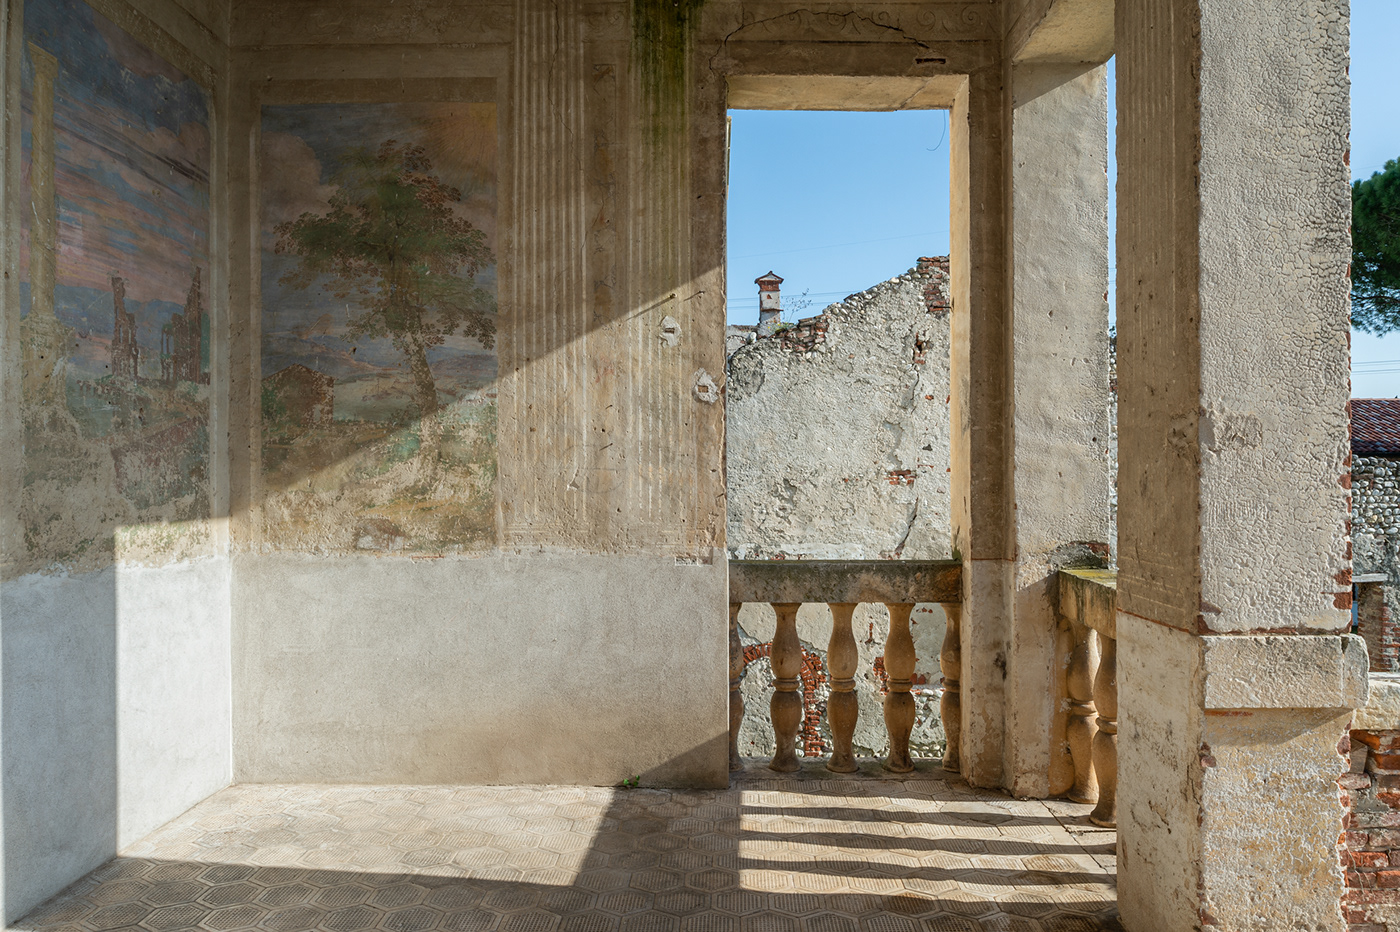 architettura foto di architettura Fotografia Montecchio Precalcino Palladio paolo mazzo vicenza